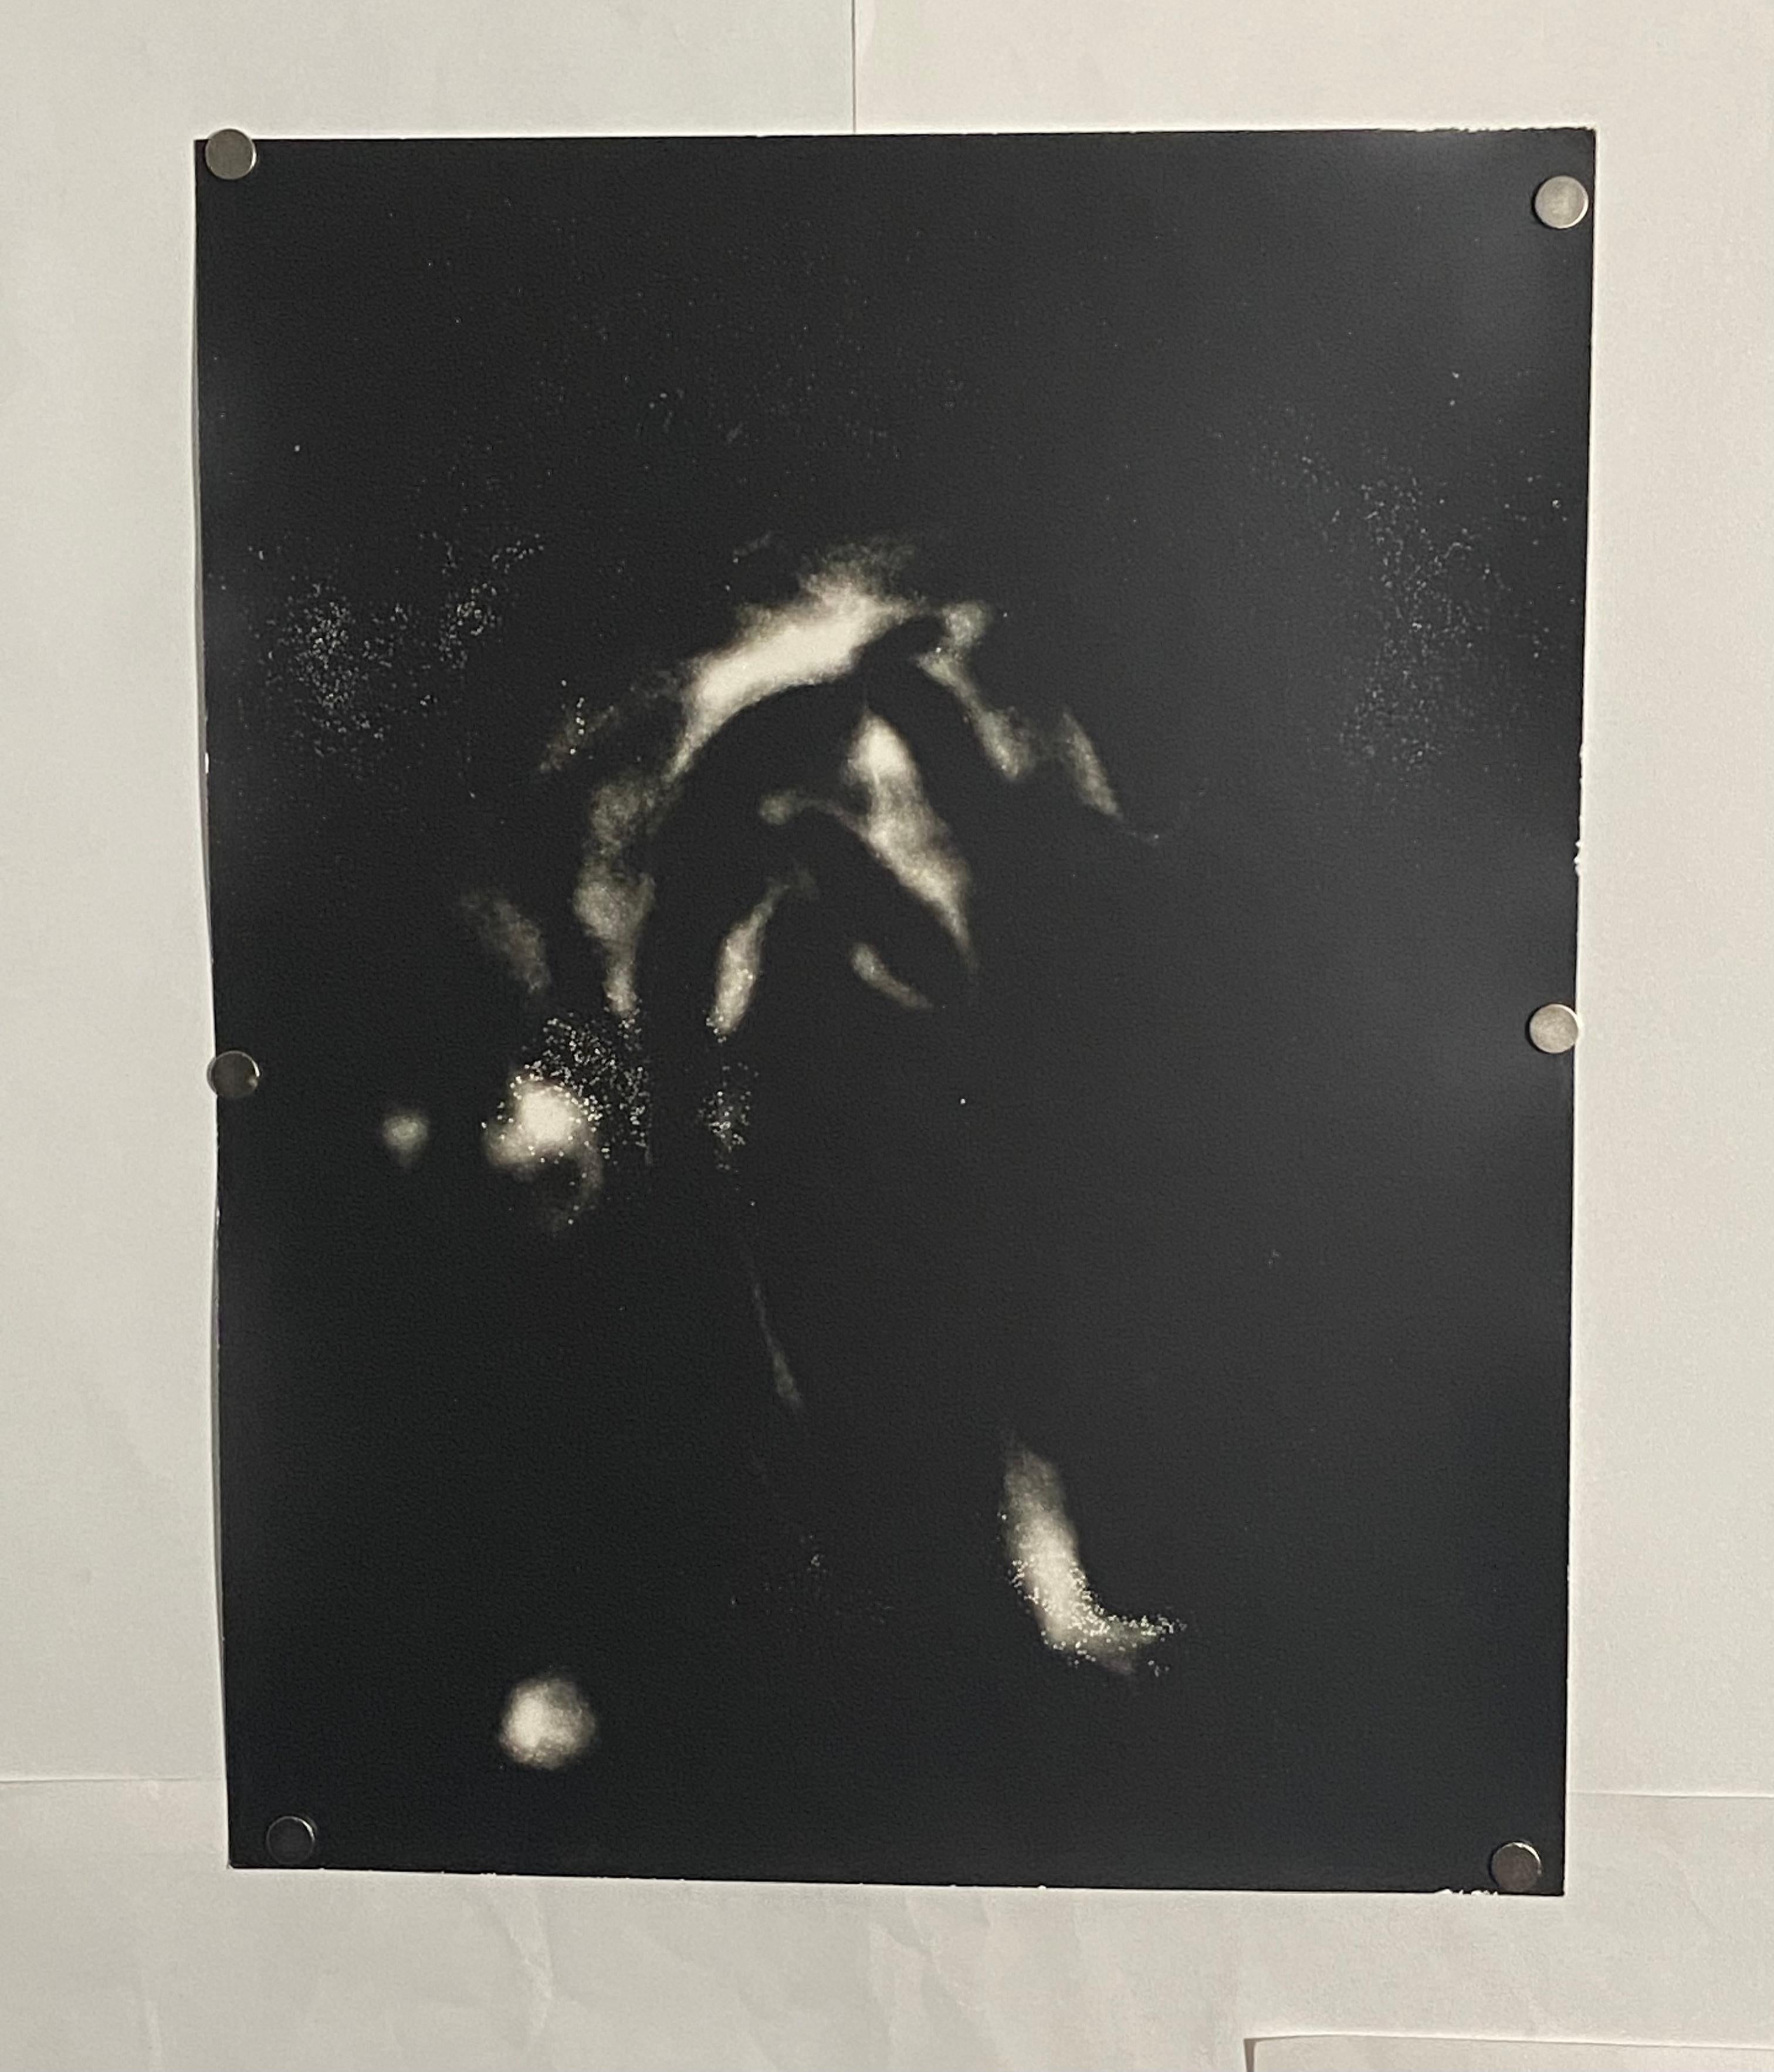 Interlaced - einzigartiges zeitgenössisches schwarzes und weißes analoges Fotogramm aus Silber gelatin – Photograph von Kimberly Schneider Photography